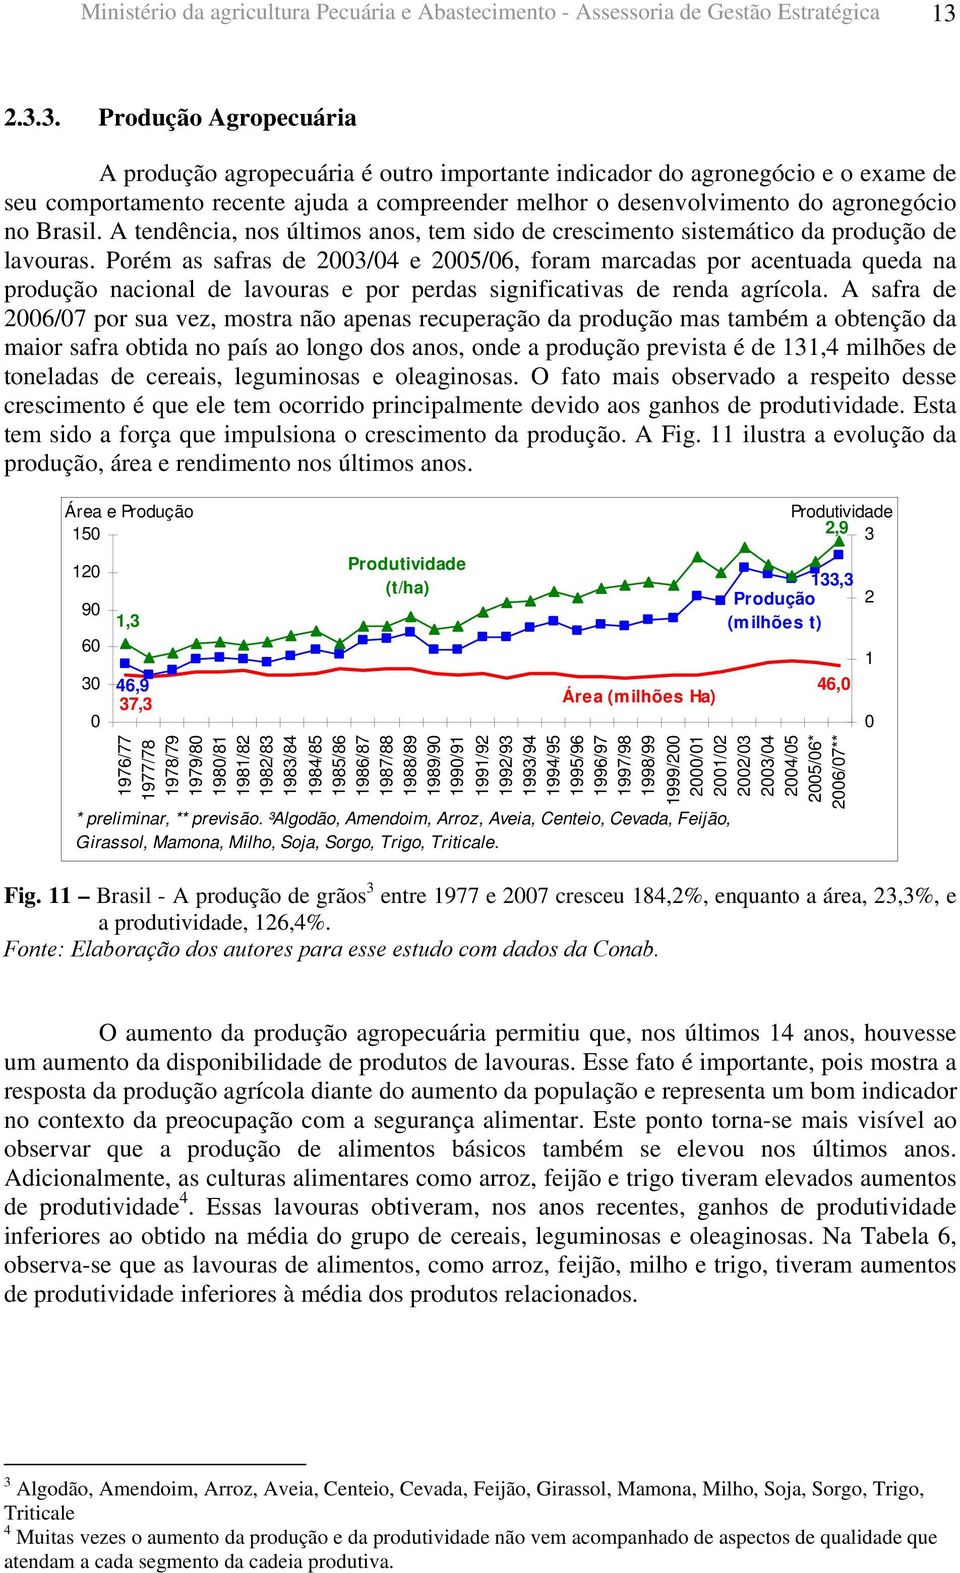 Brasil. A tendência, nos últimos anos, tem sido de crescimento sistemático da produção de lavouras.